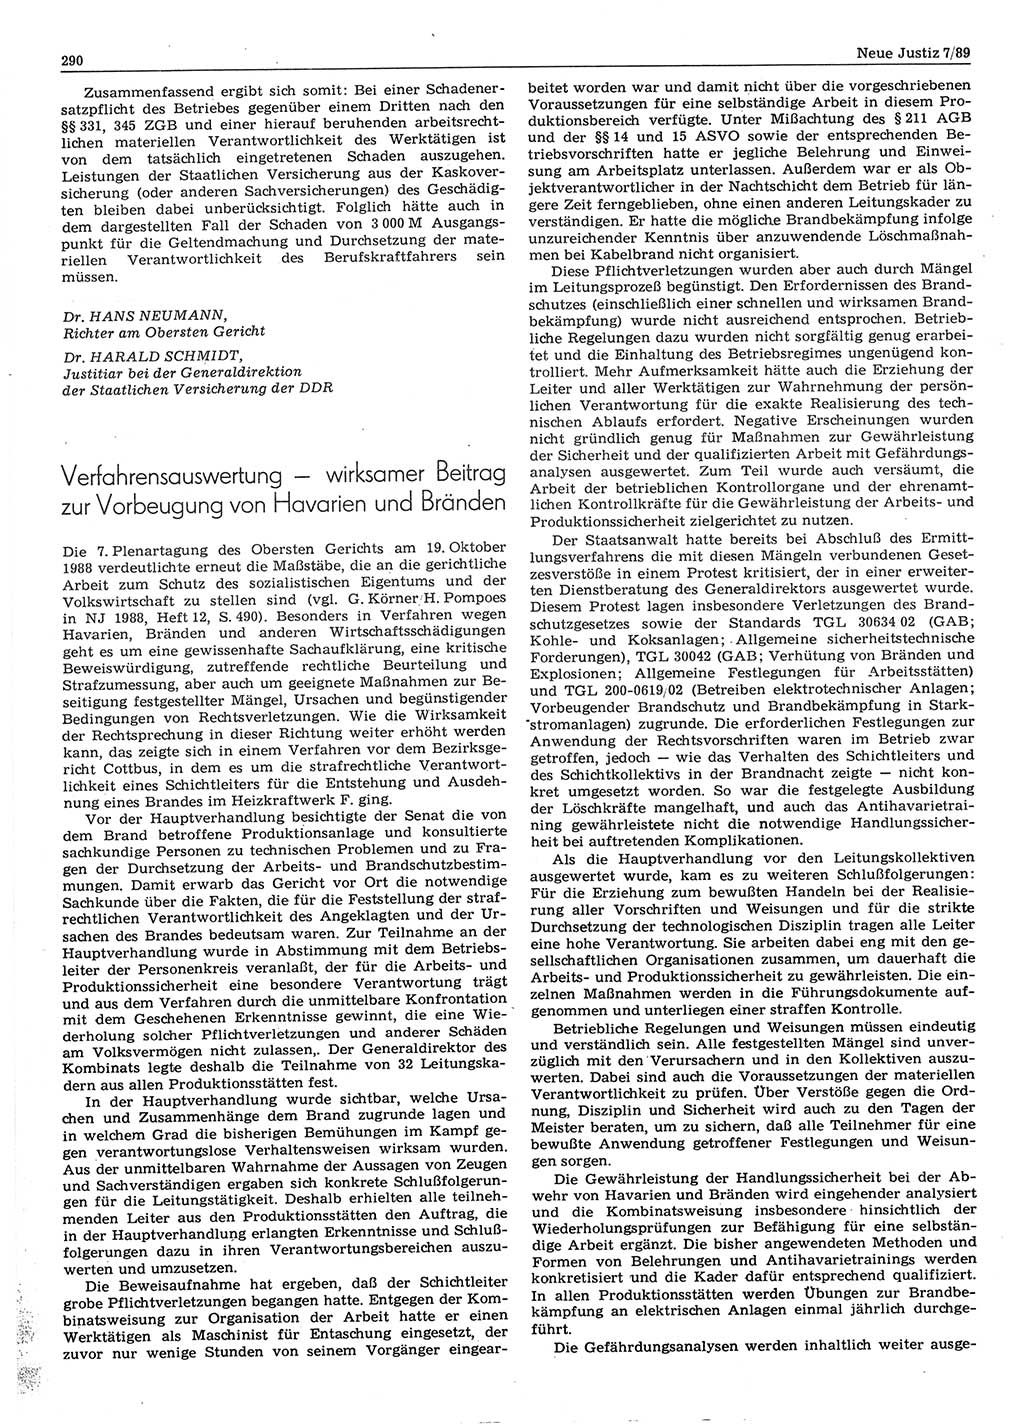 Neue Justiz (NJ), Zeitschrift für sozialistisches Recht und Gesetzlichkeit [Deutsche Demokratische Republik (DDR)], 43. Jahrgang 1989, Seite 290 (NJ DDR 1989, S. 290)